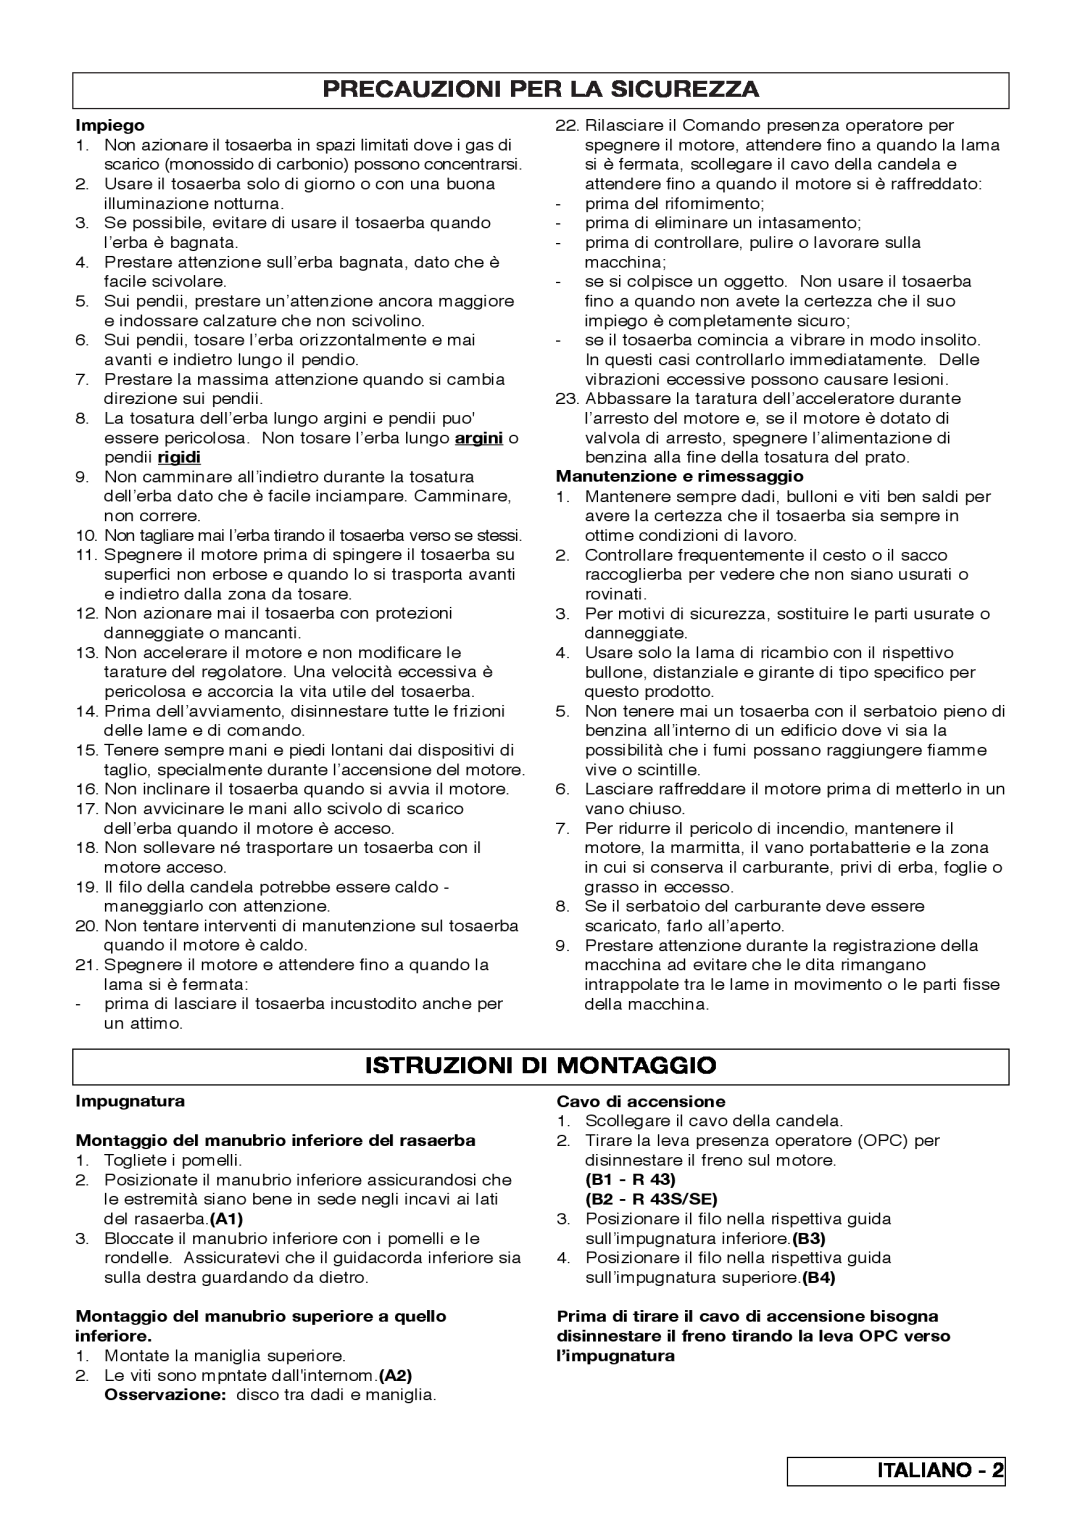 Husqvarna R 43SE manual Precauzioni Per La Sicurezza, Istruzioni Di Montaggio 